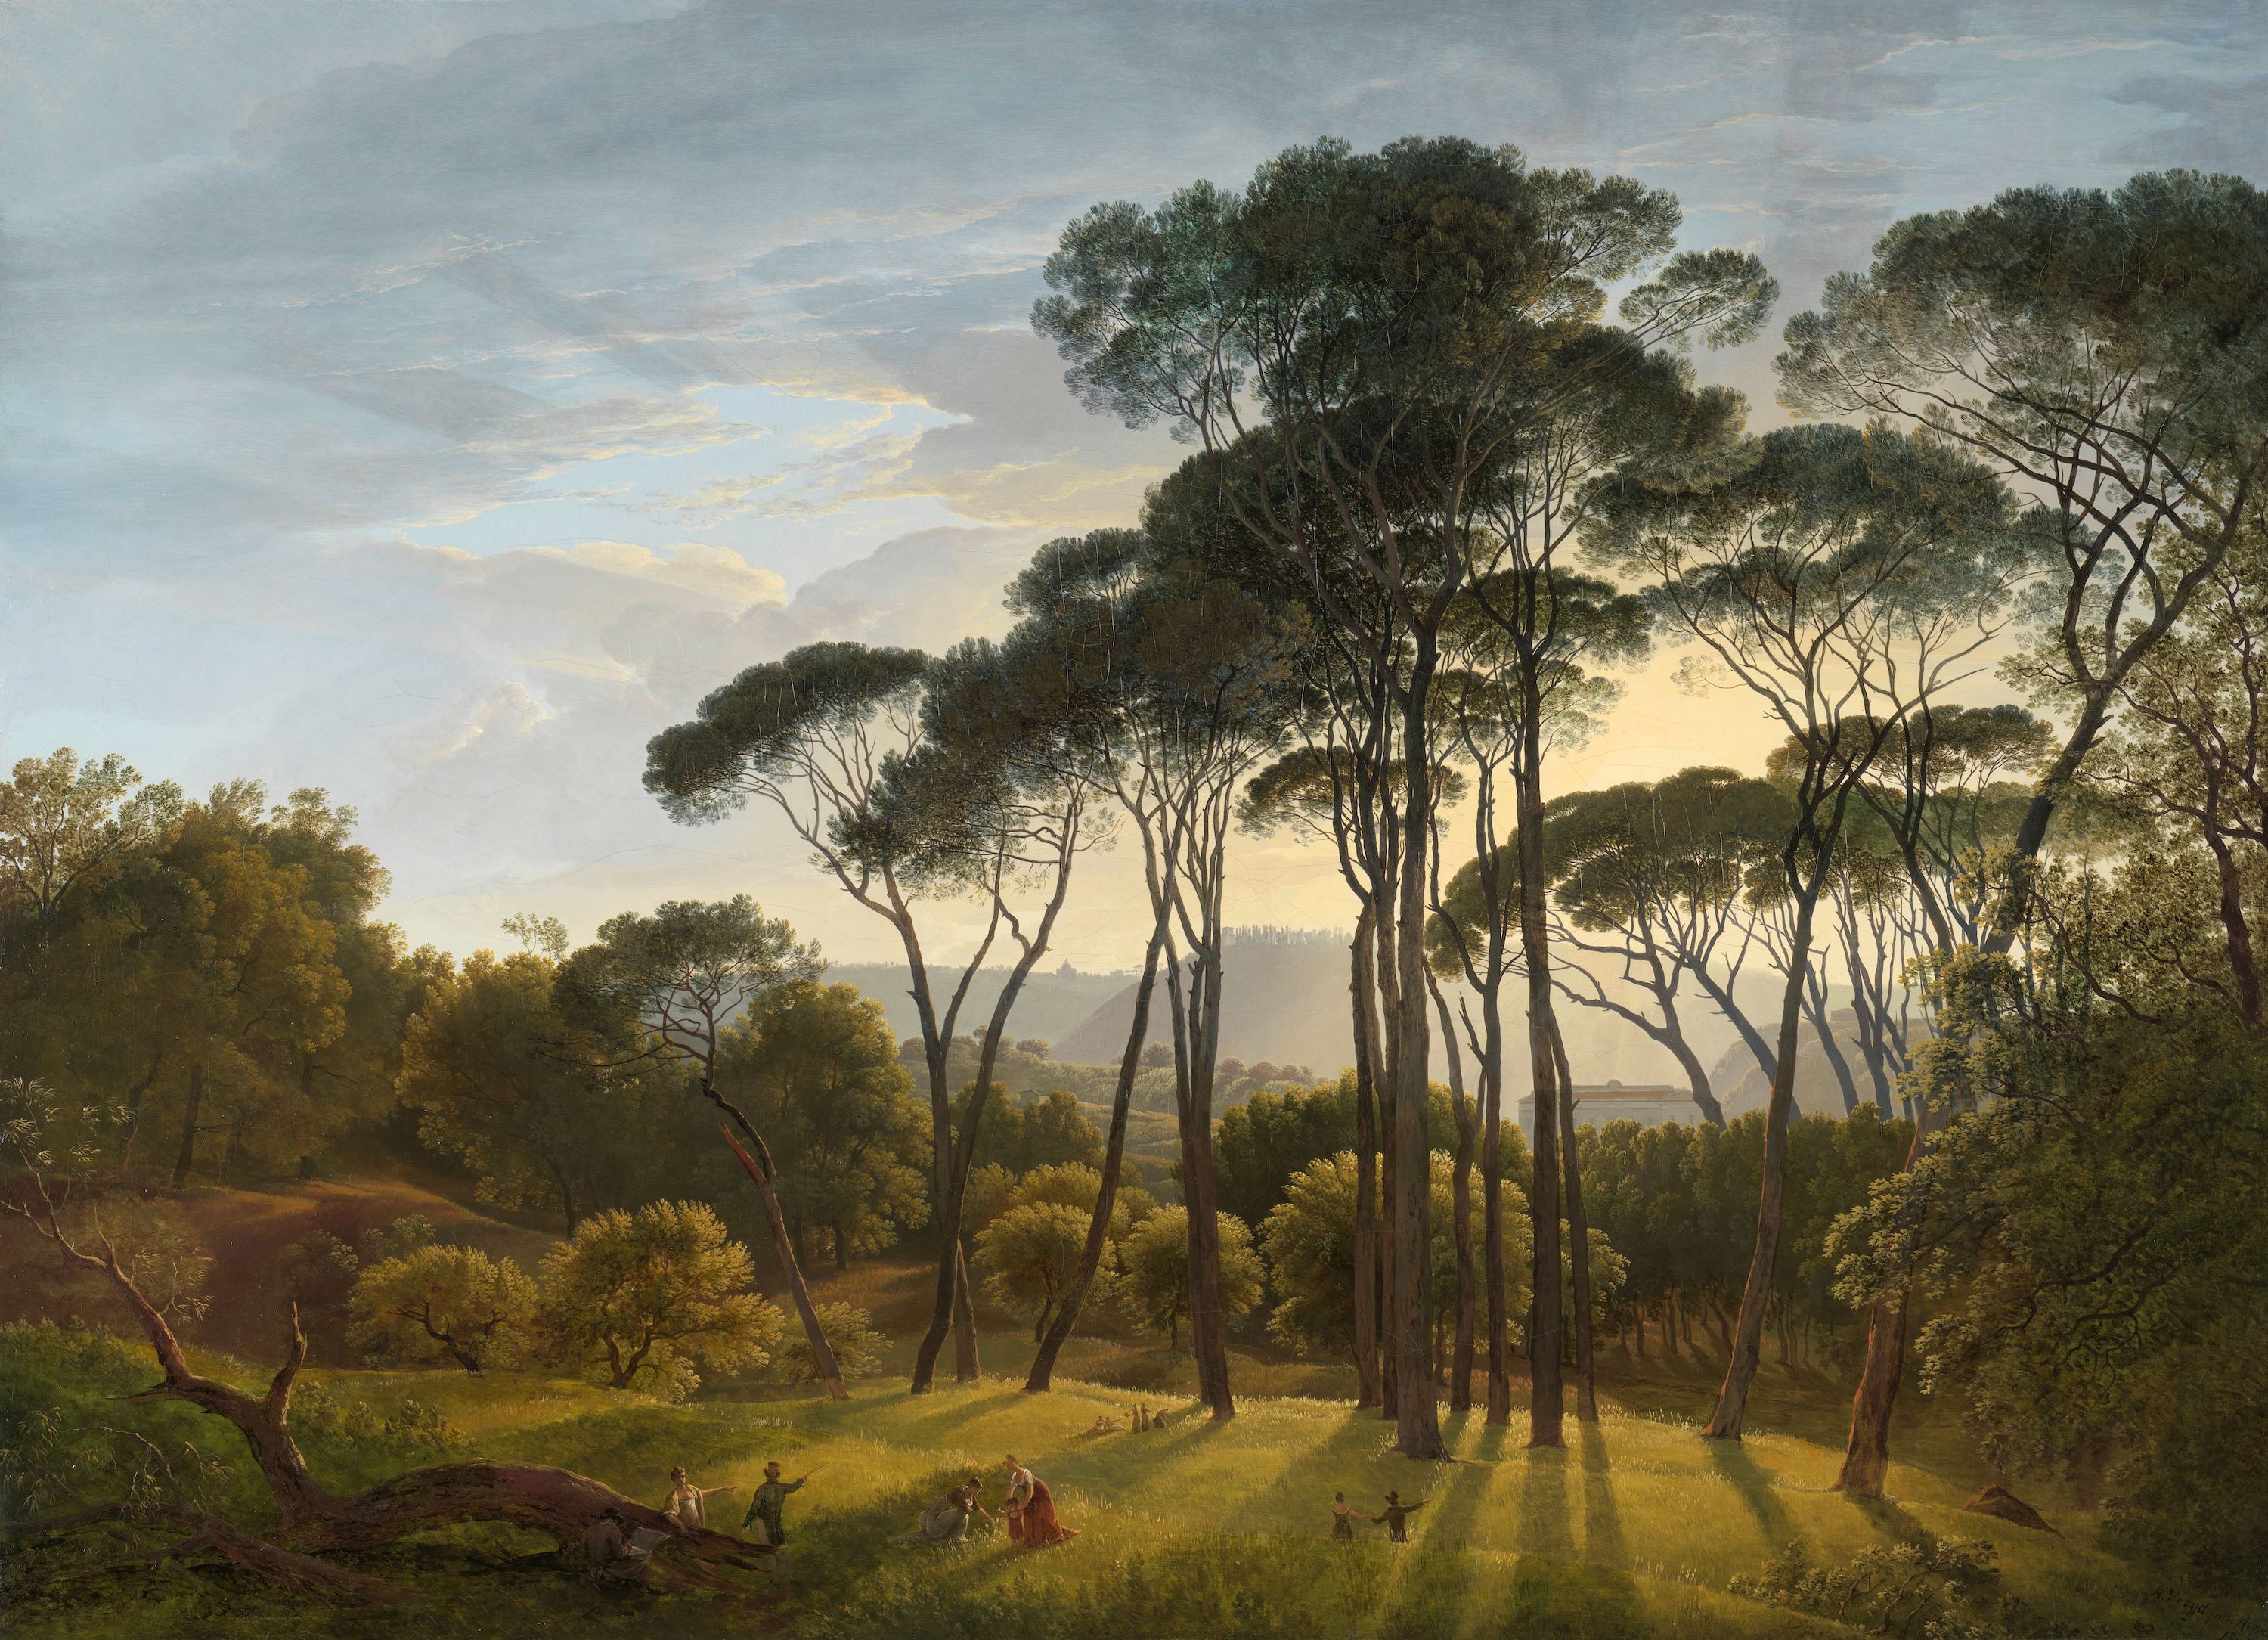 Şemsiye Çamları ile İtalyan Manzarası (orig. "Italian Landscape with Umbrella Pines") by Hendrik Voogd - 1807 - 101.5 × 138.5 cm 